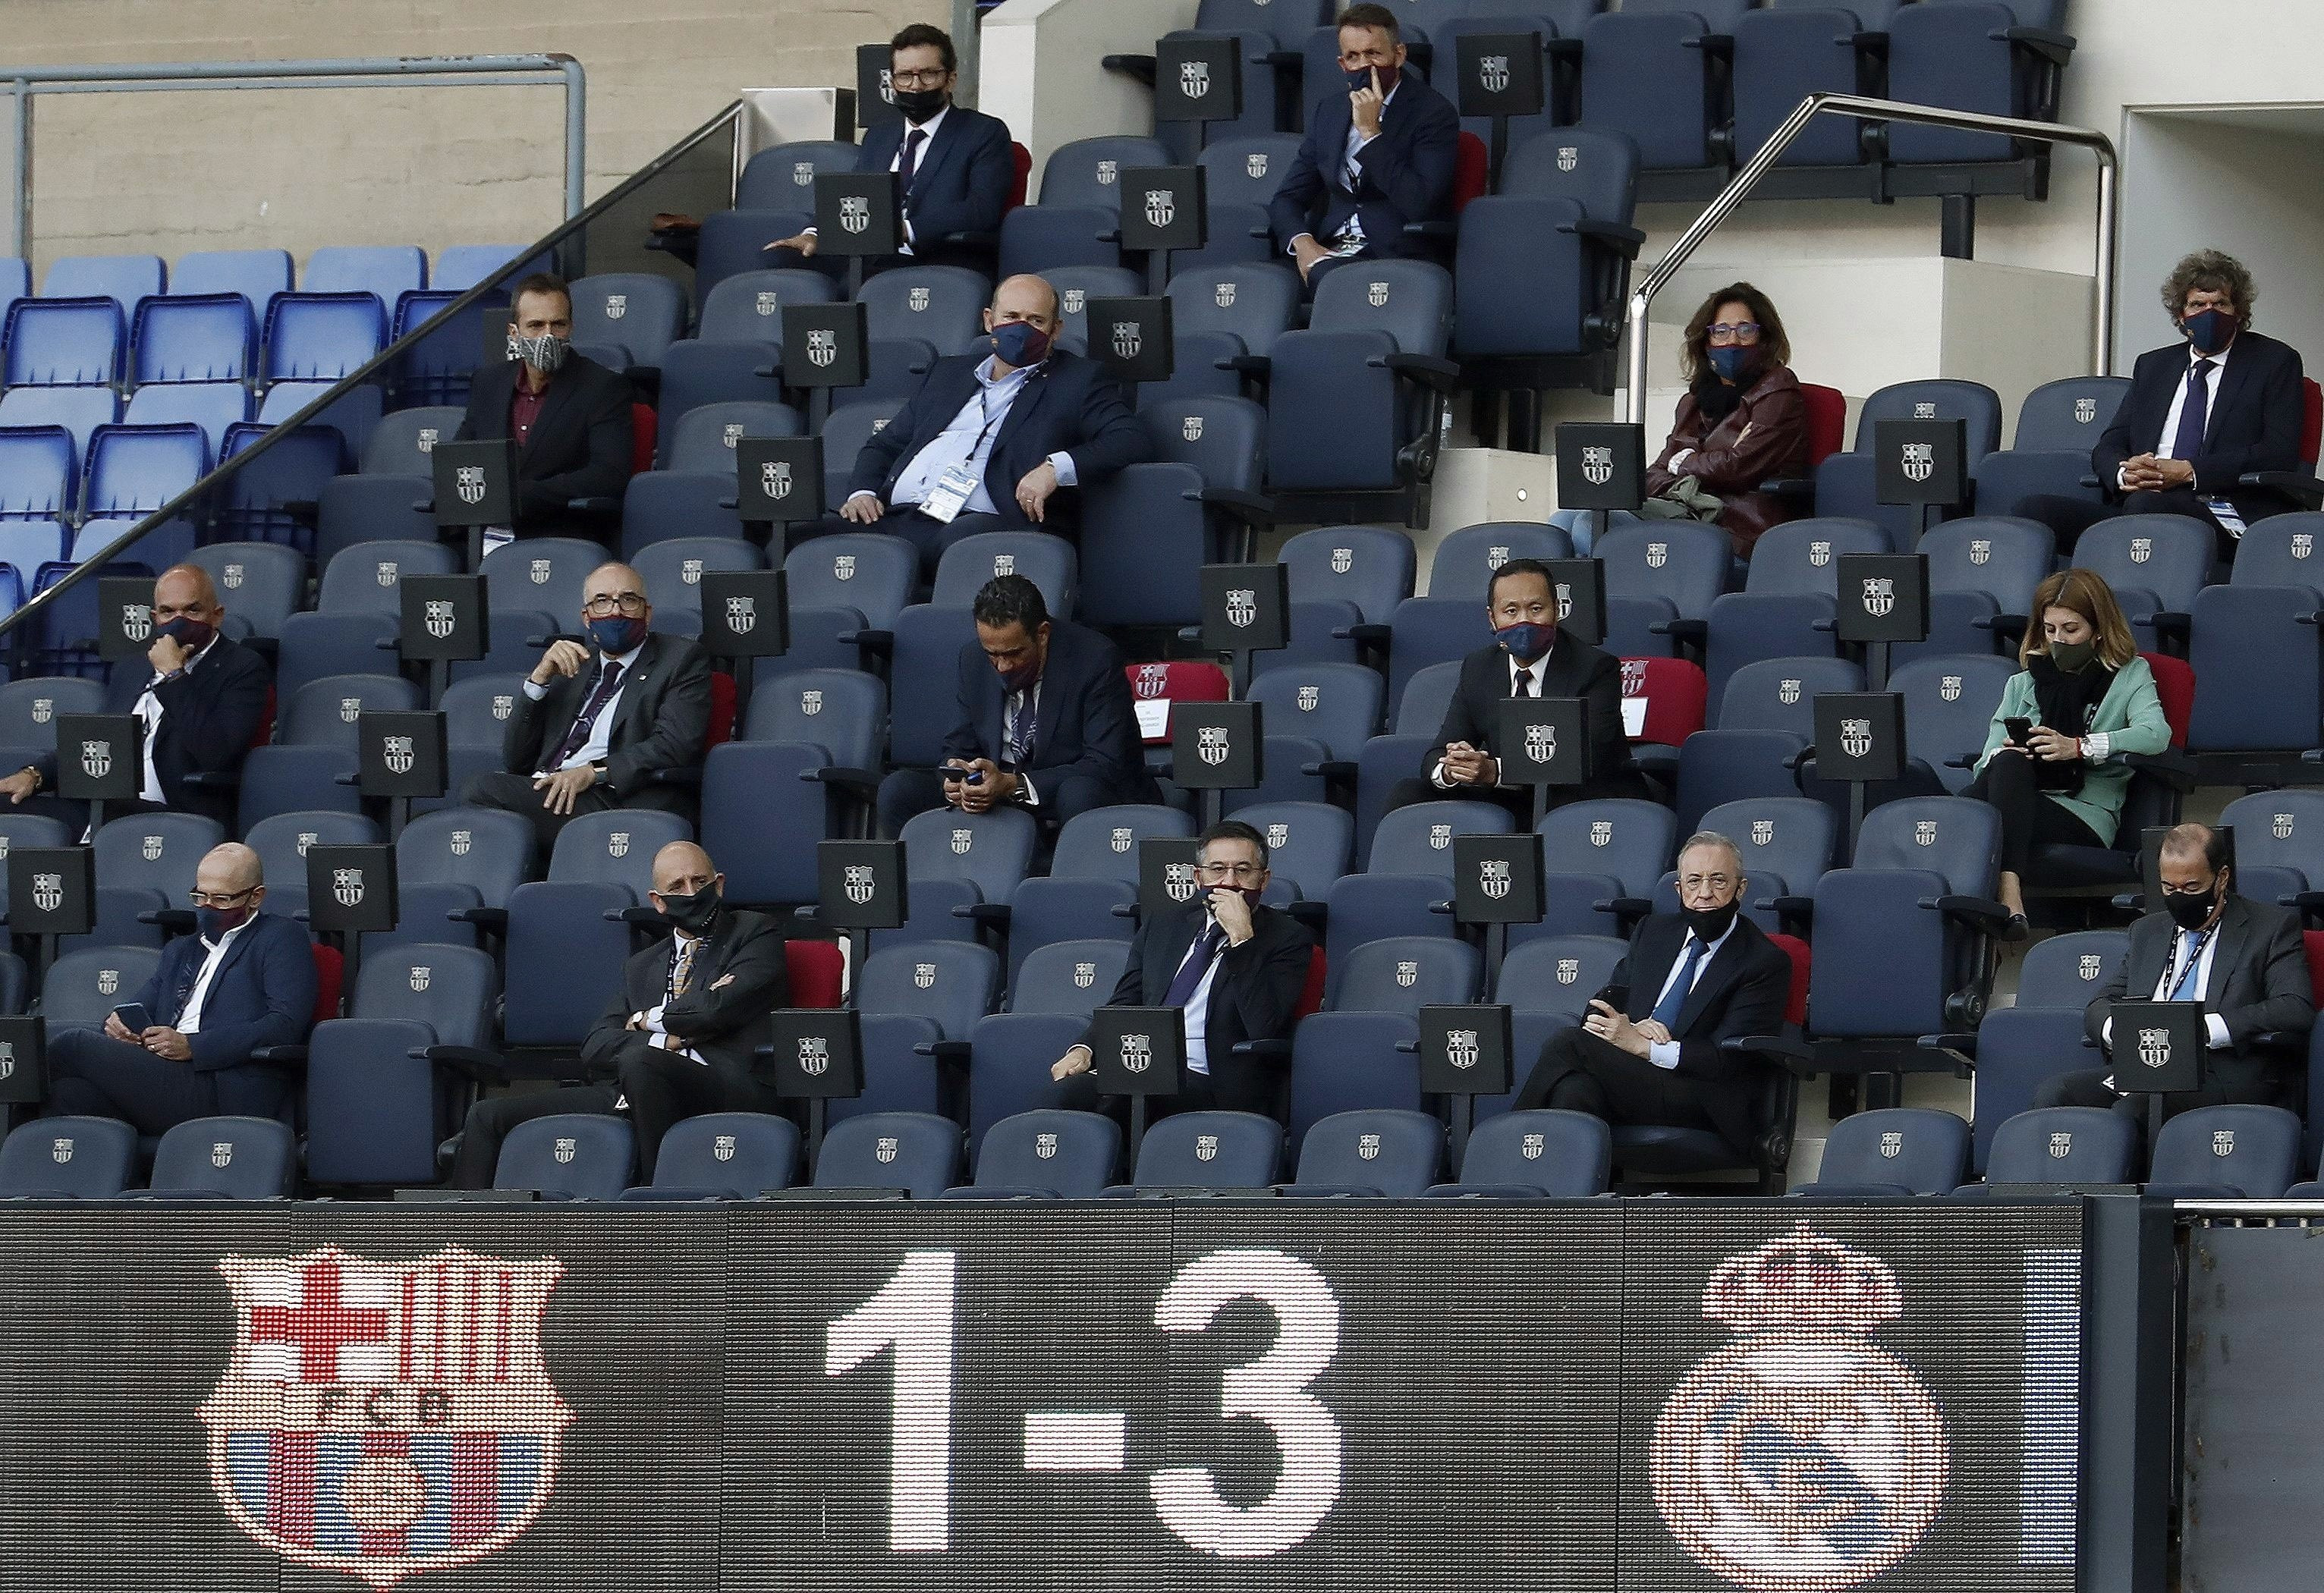 Bartomeu y Florentino, en el Camp Nou durante el clásico / EFE